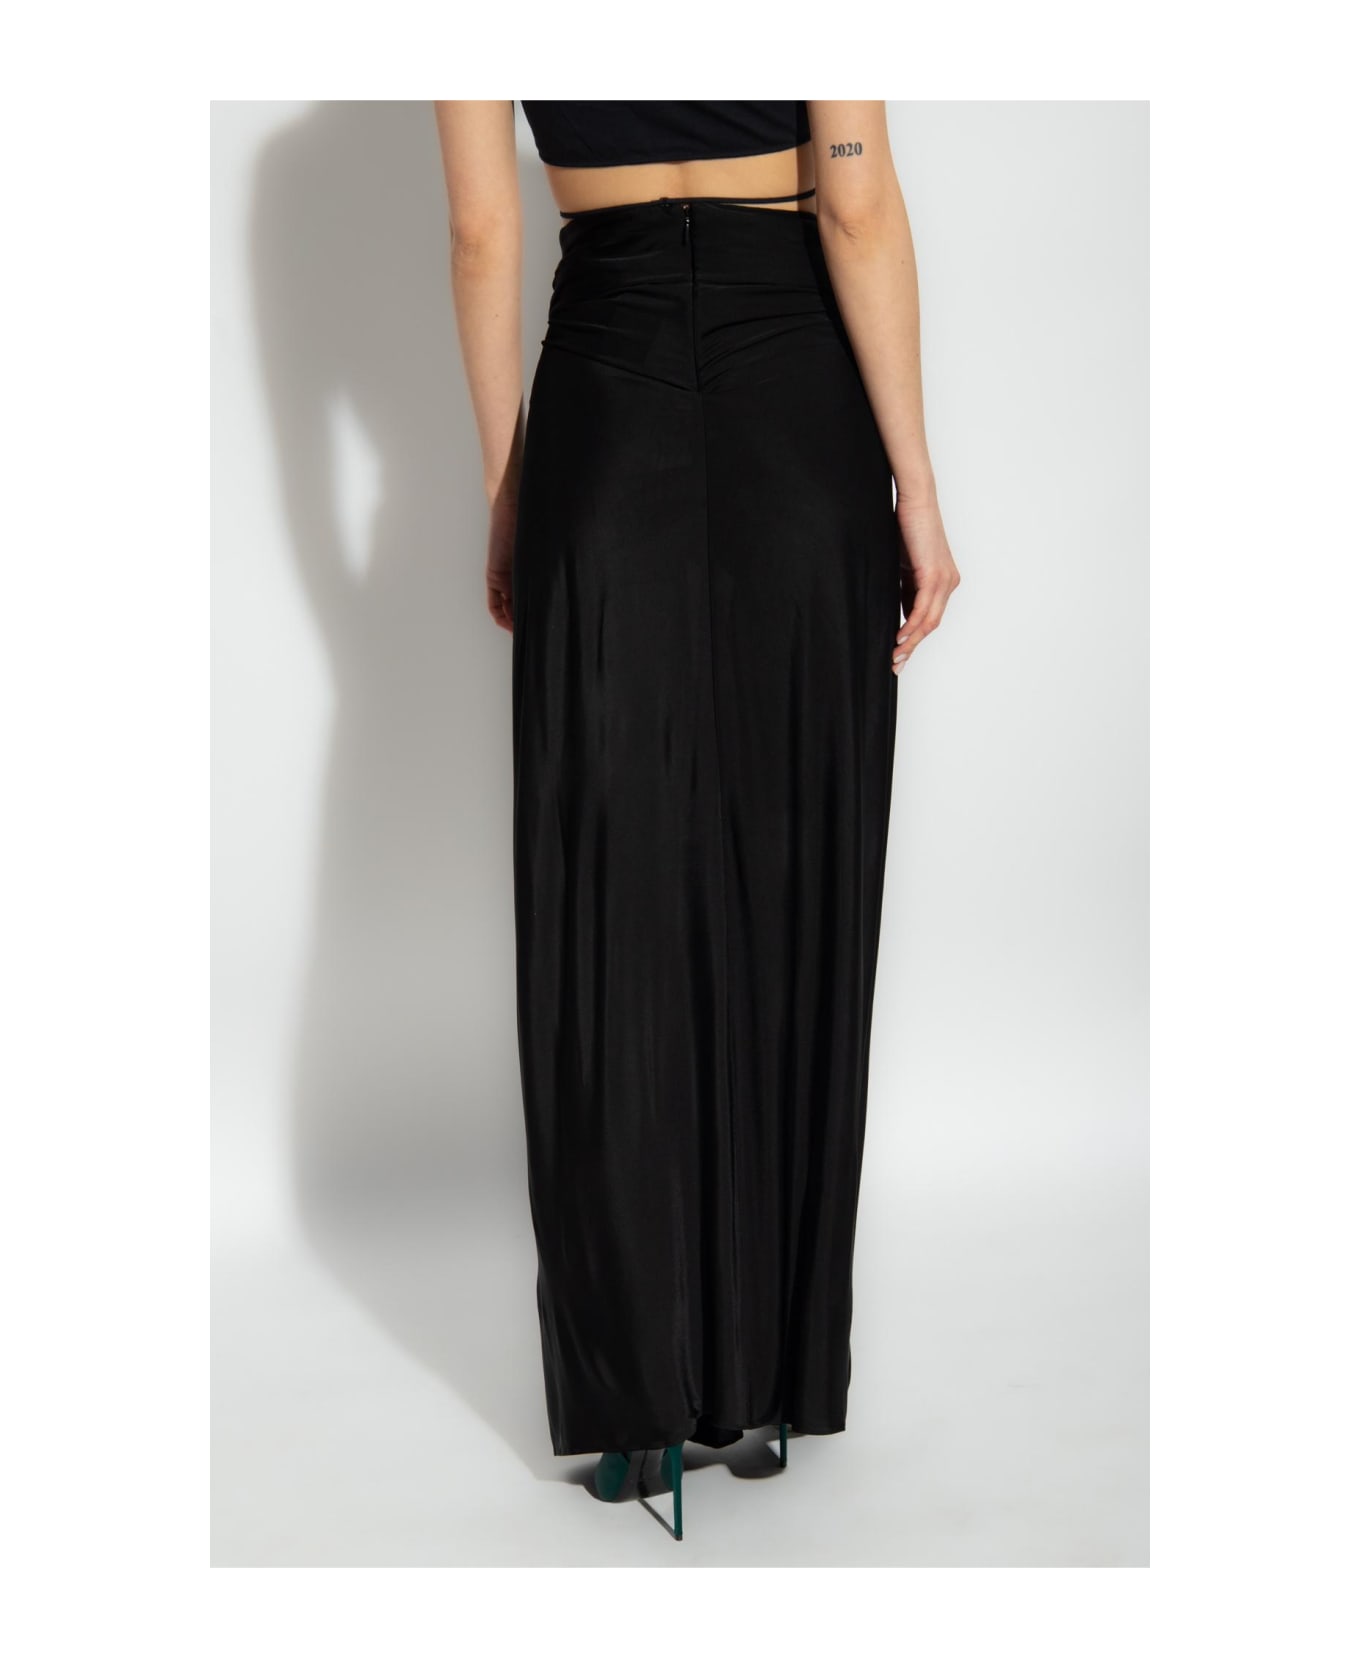 Saint Laurent Draped Skirt - Noir スカート